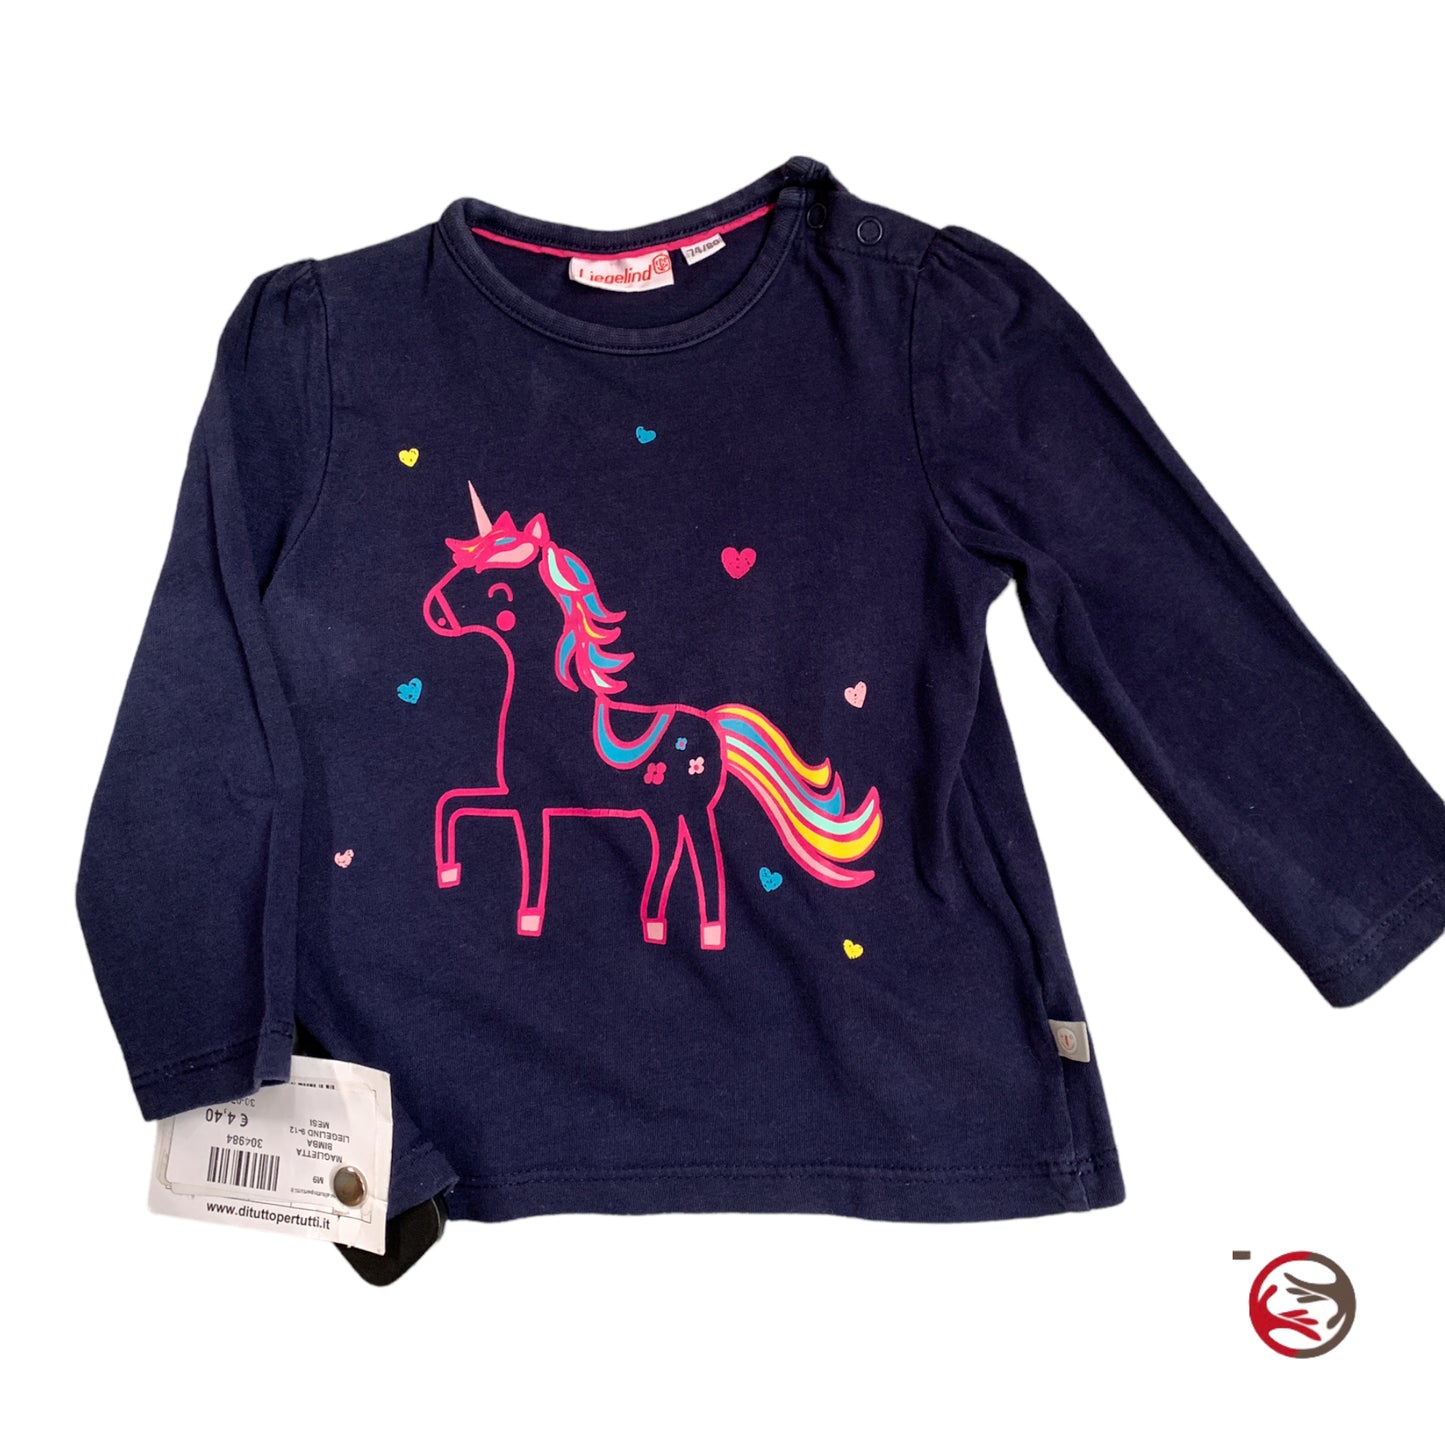 Maglietta bambina 9-12 mesi Liegelind con unicorno